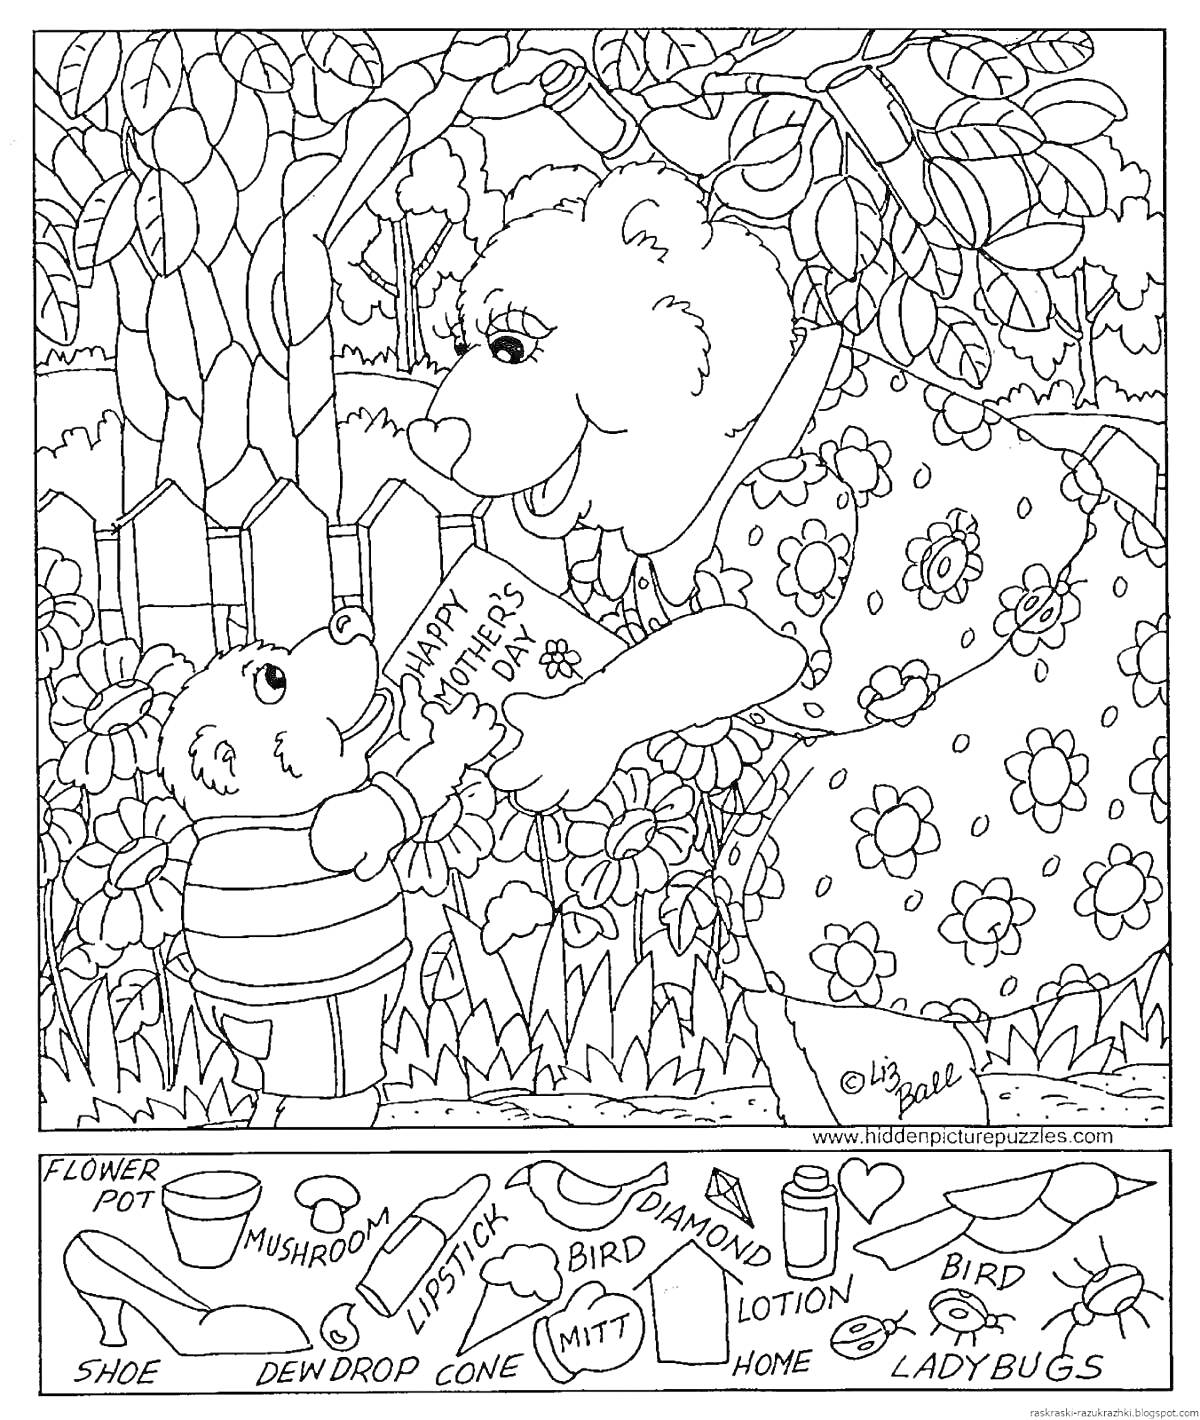 Мама-медведь с медвежонком на фоне сада, папоротников и забора, найдите цветочный горшок, туфлю, губную помаду, гриб, росу, шишку, перчатку, птицу, алмаз, лосьон, улей, божьих коровок